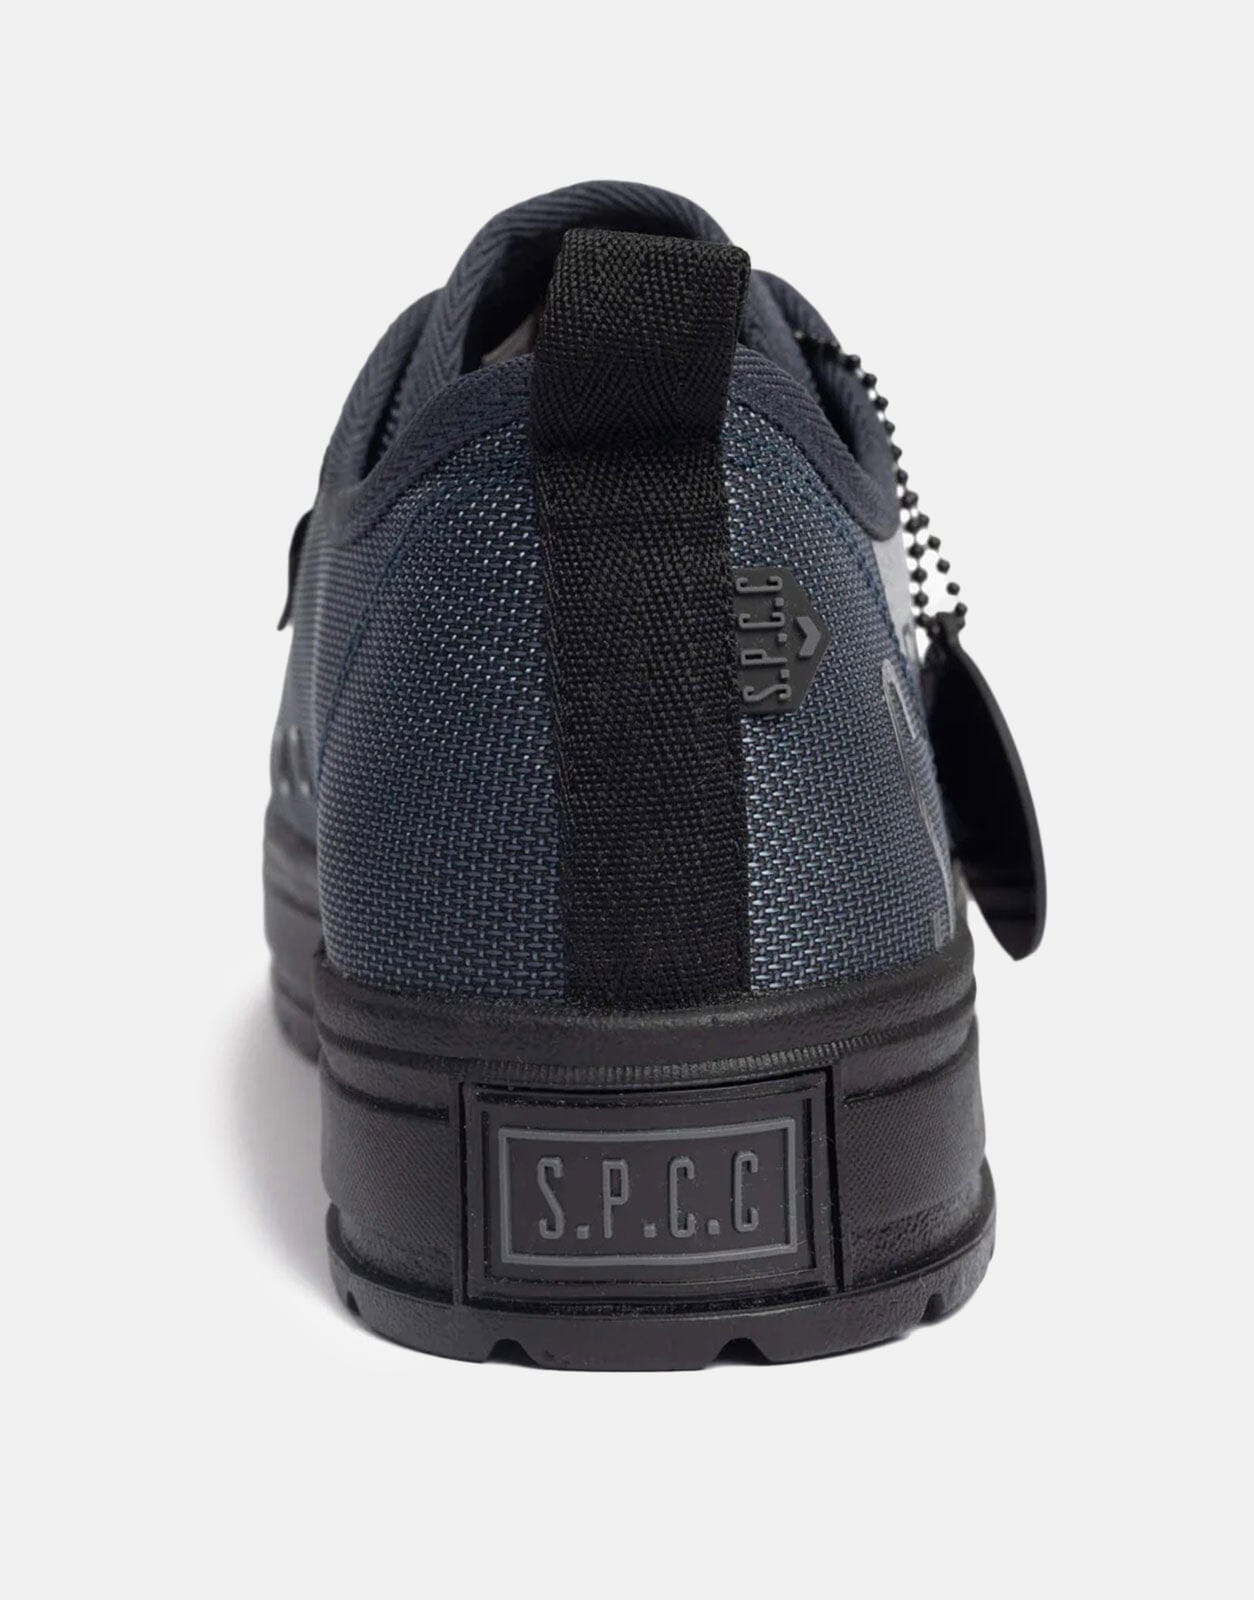 SPCC Surge Sceptre Lo Sneakers - Subwear